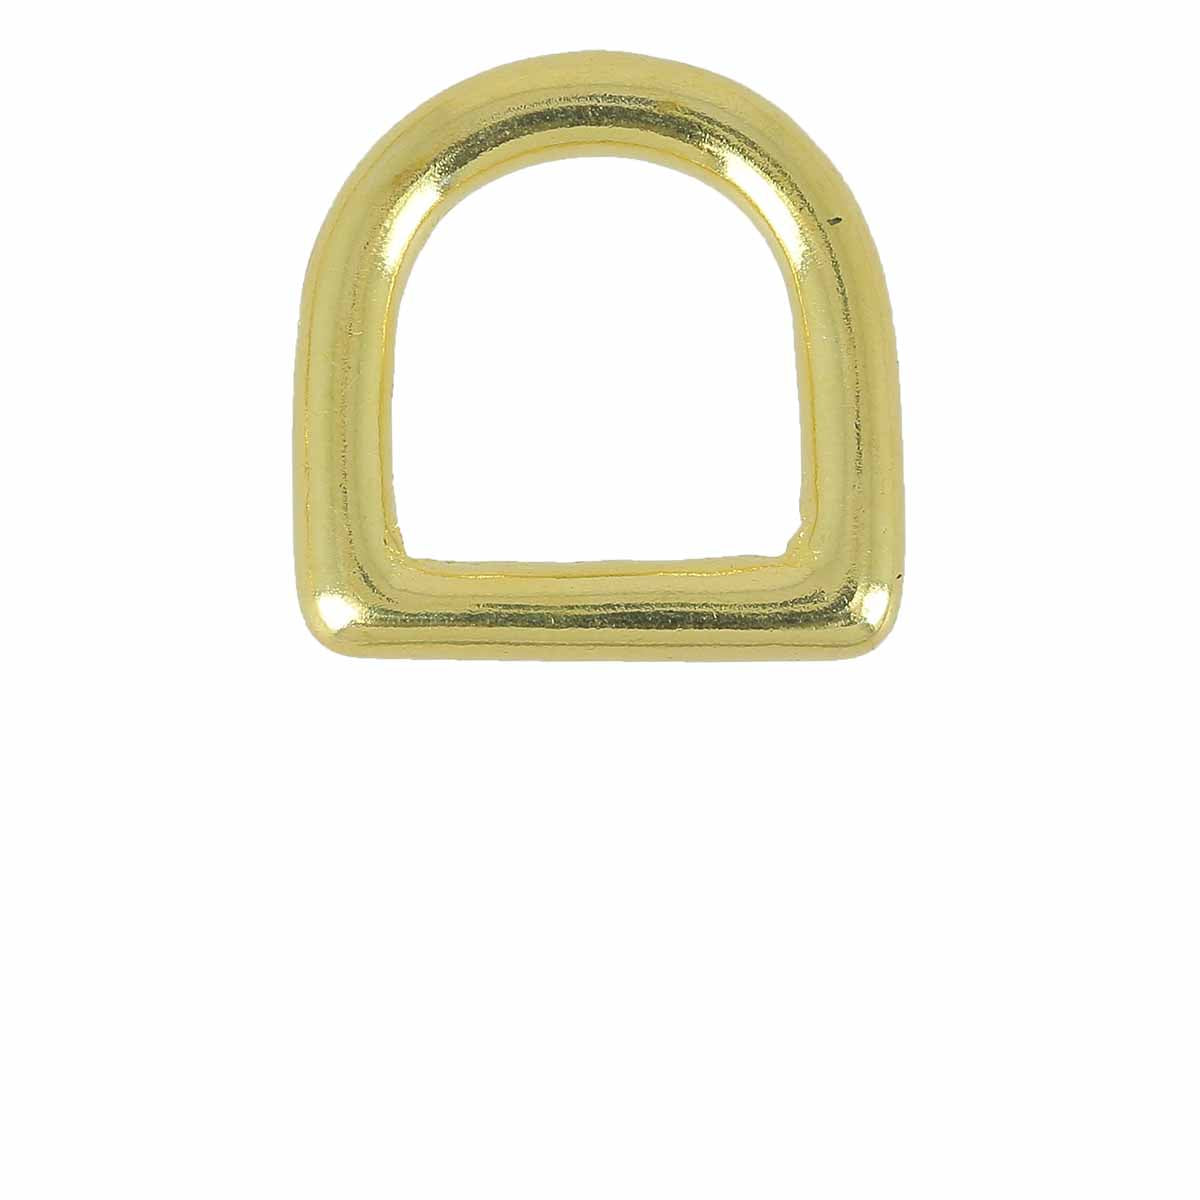 anneau en d, anneaux demi-ronds, boucle,laiton argent, lot de 10 - taille  35 mm - Un grand marché